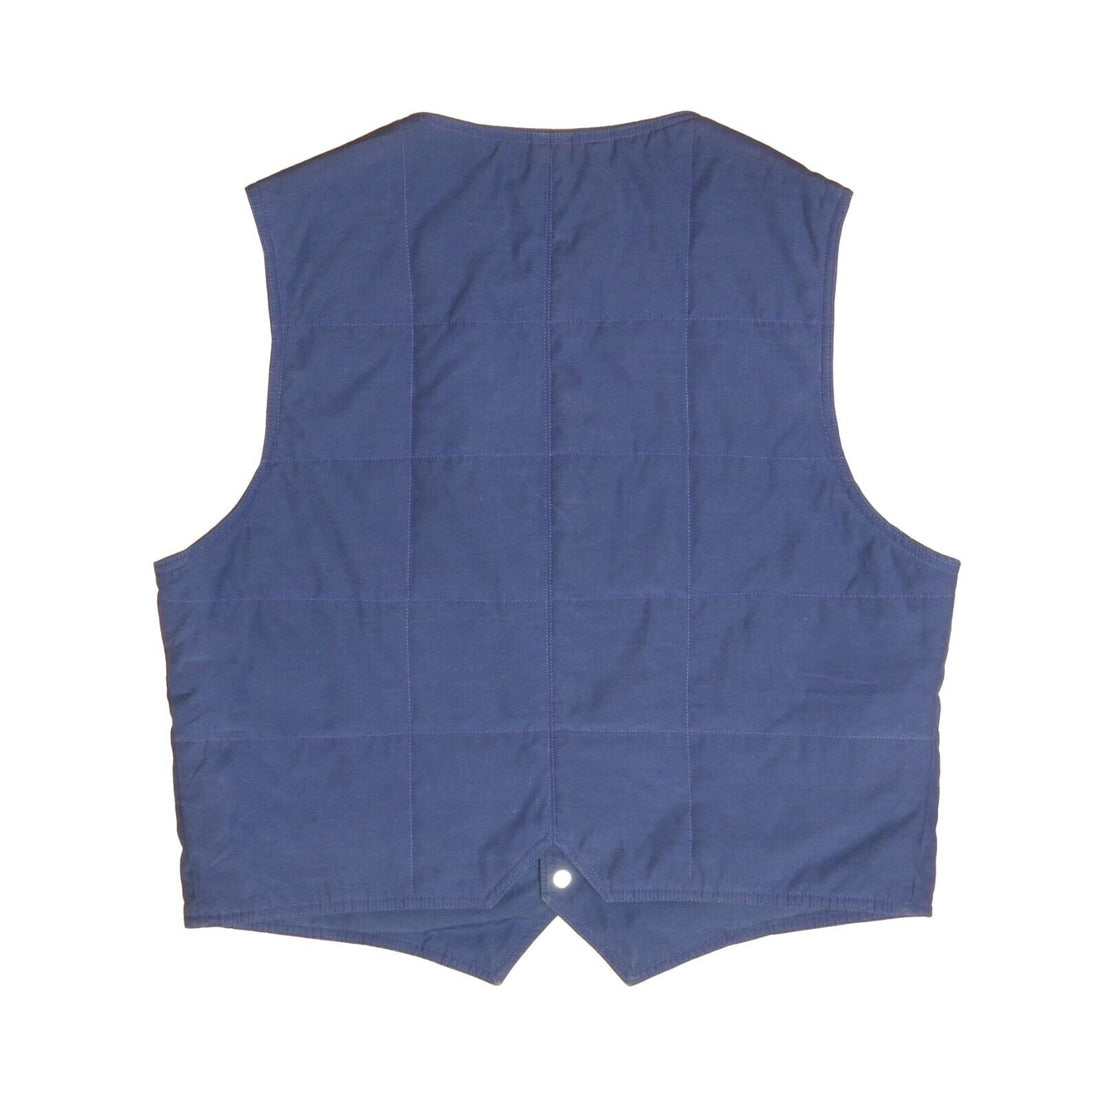 Vintage The North Face Vest Jacket Size XL Blue 80s